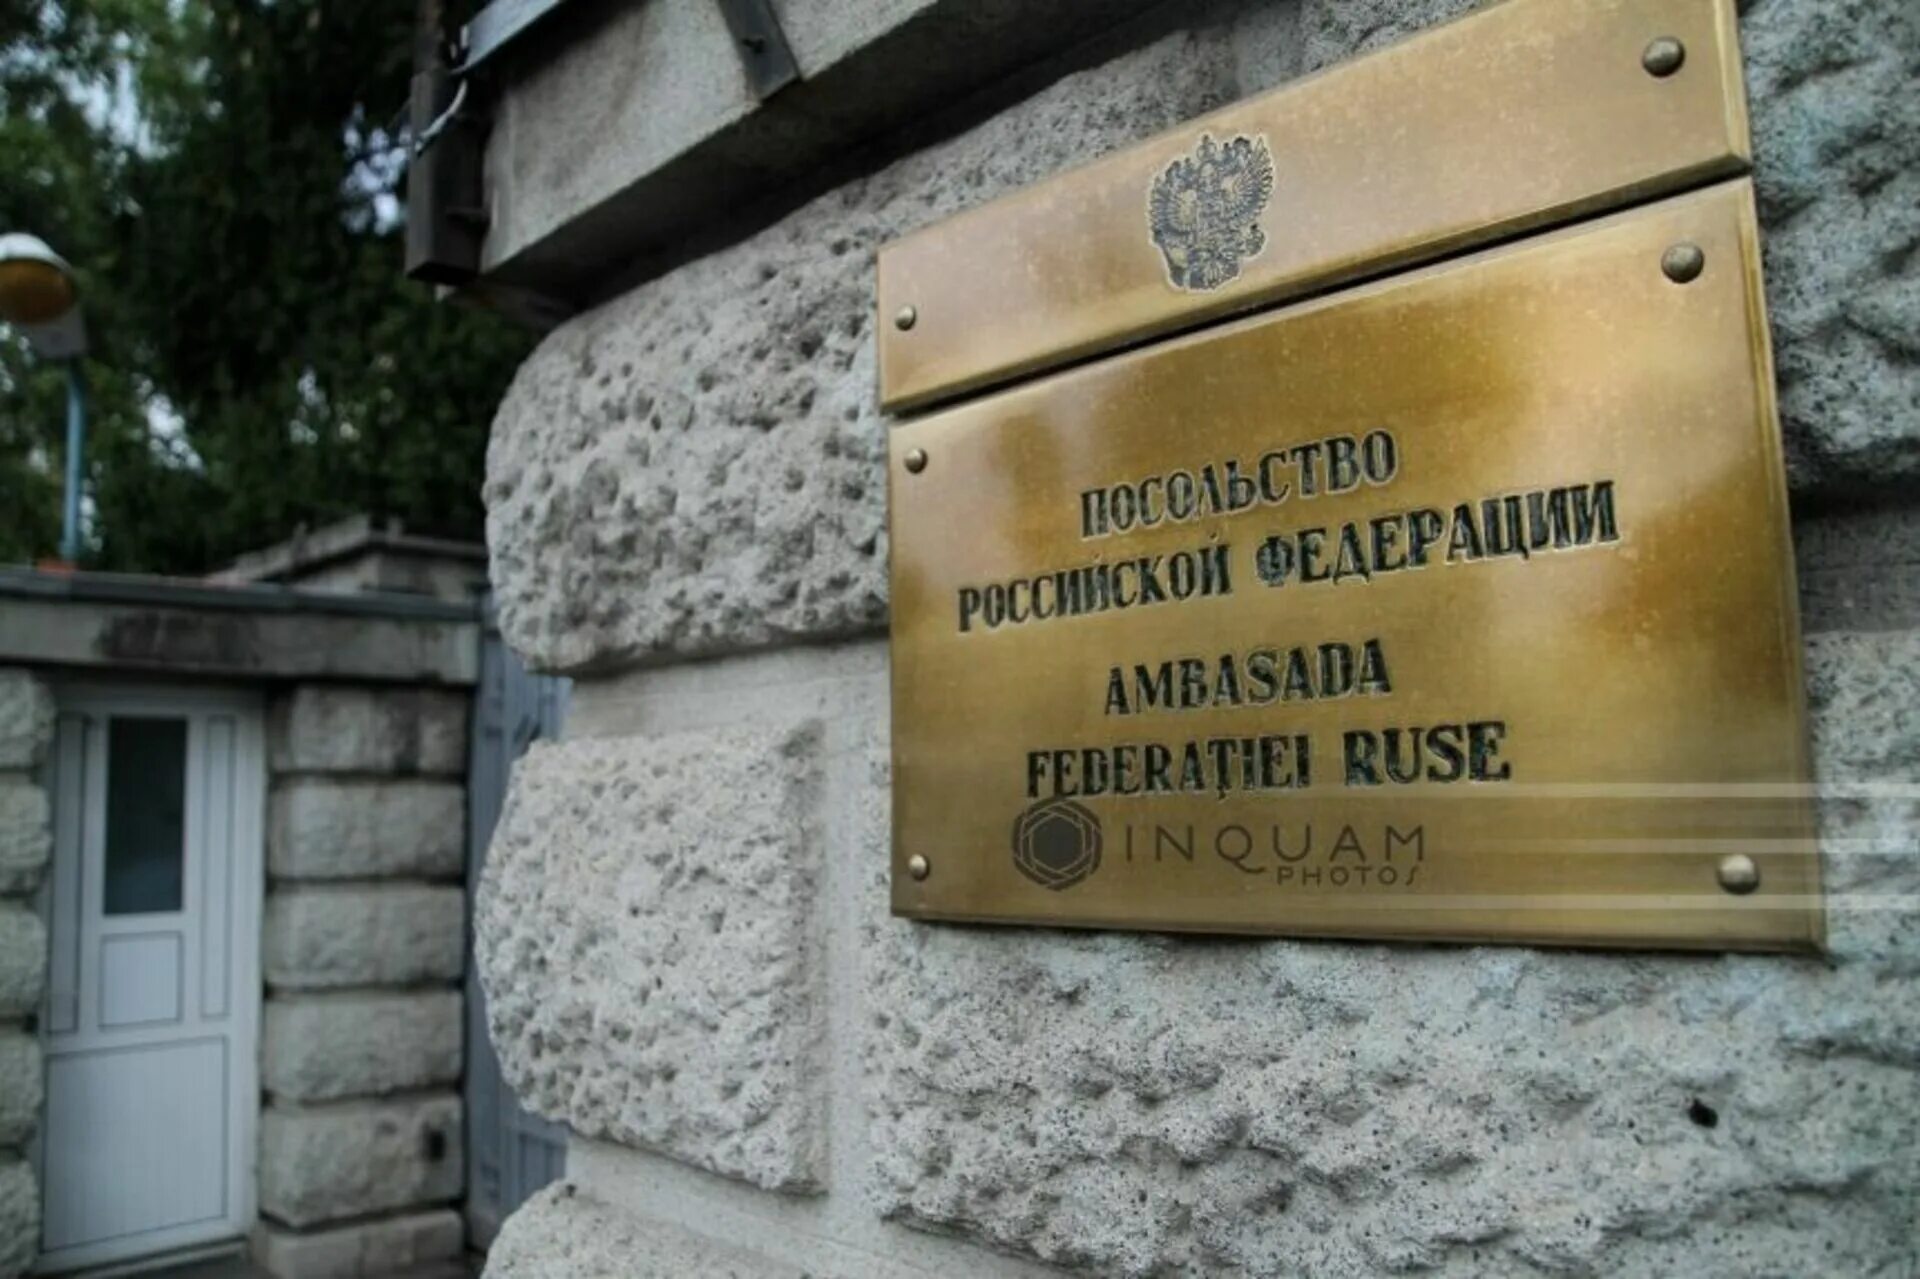 Посольство россии в румынии. Посольство РФ В Румынии. Посольство России в Бухаресте. Румыния Бухарест посольство России. Посольство в Румынии в Бухаресте.